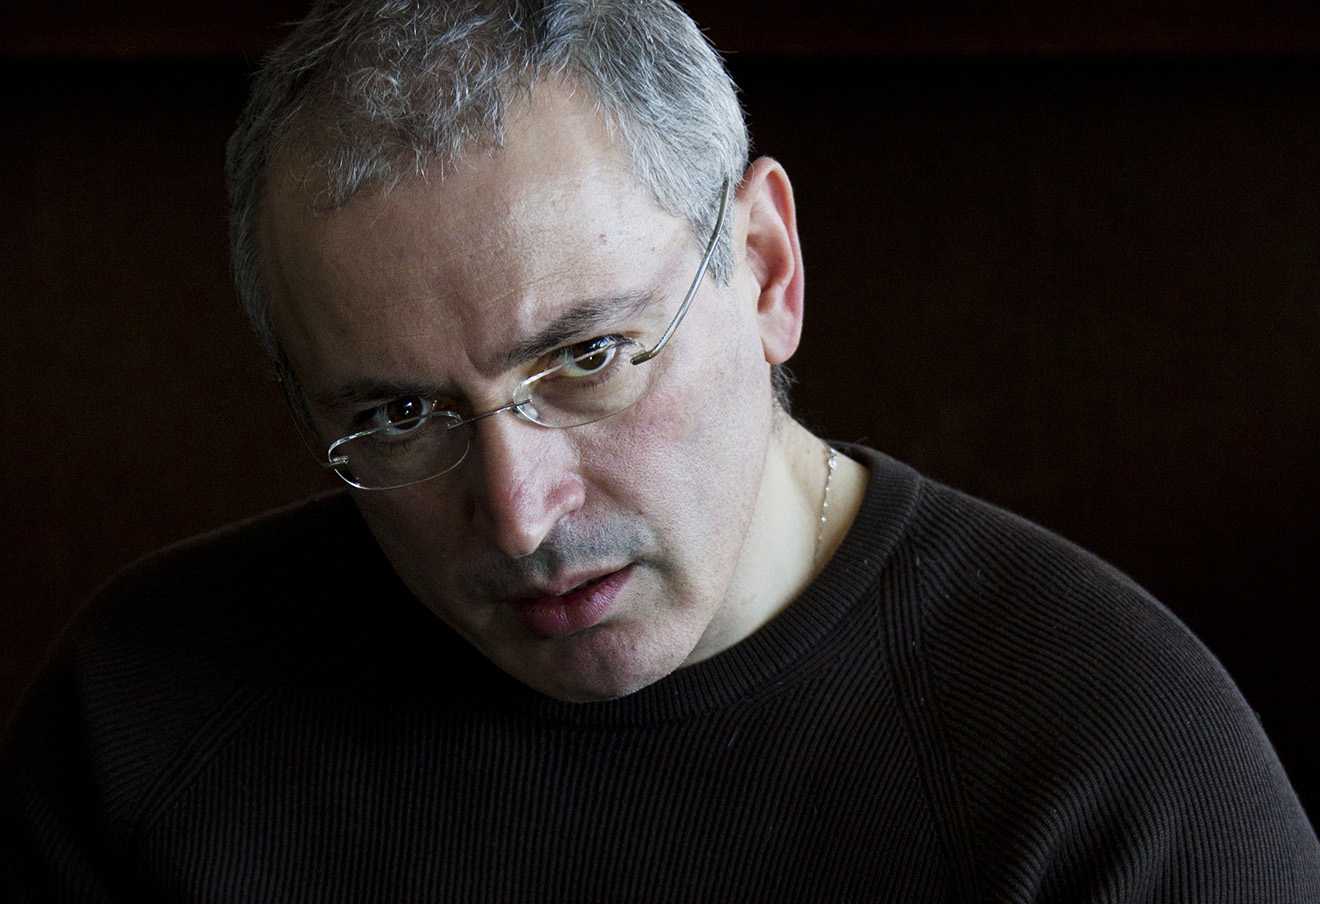 Ходорковский опозорился, выдав фейк «Панорамы» за чистую монету